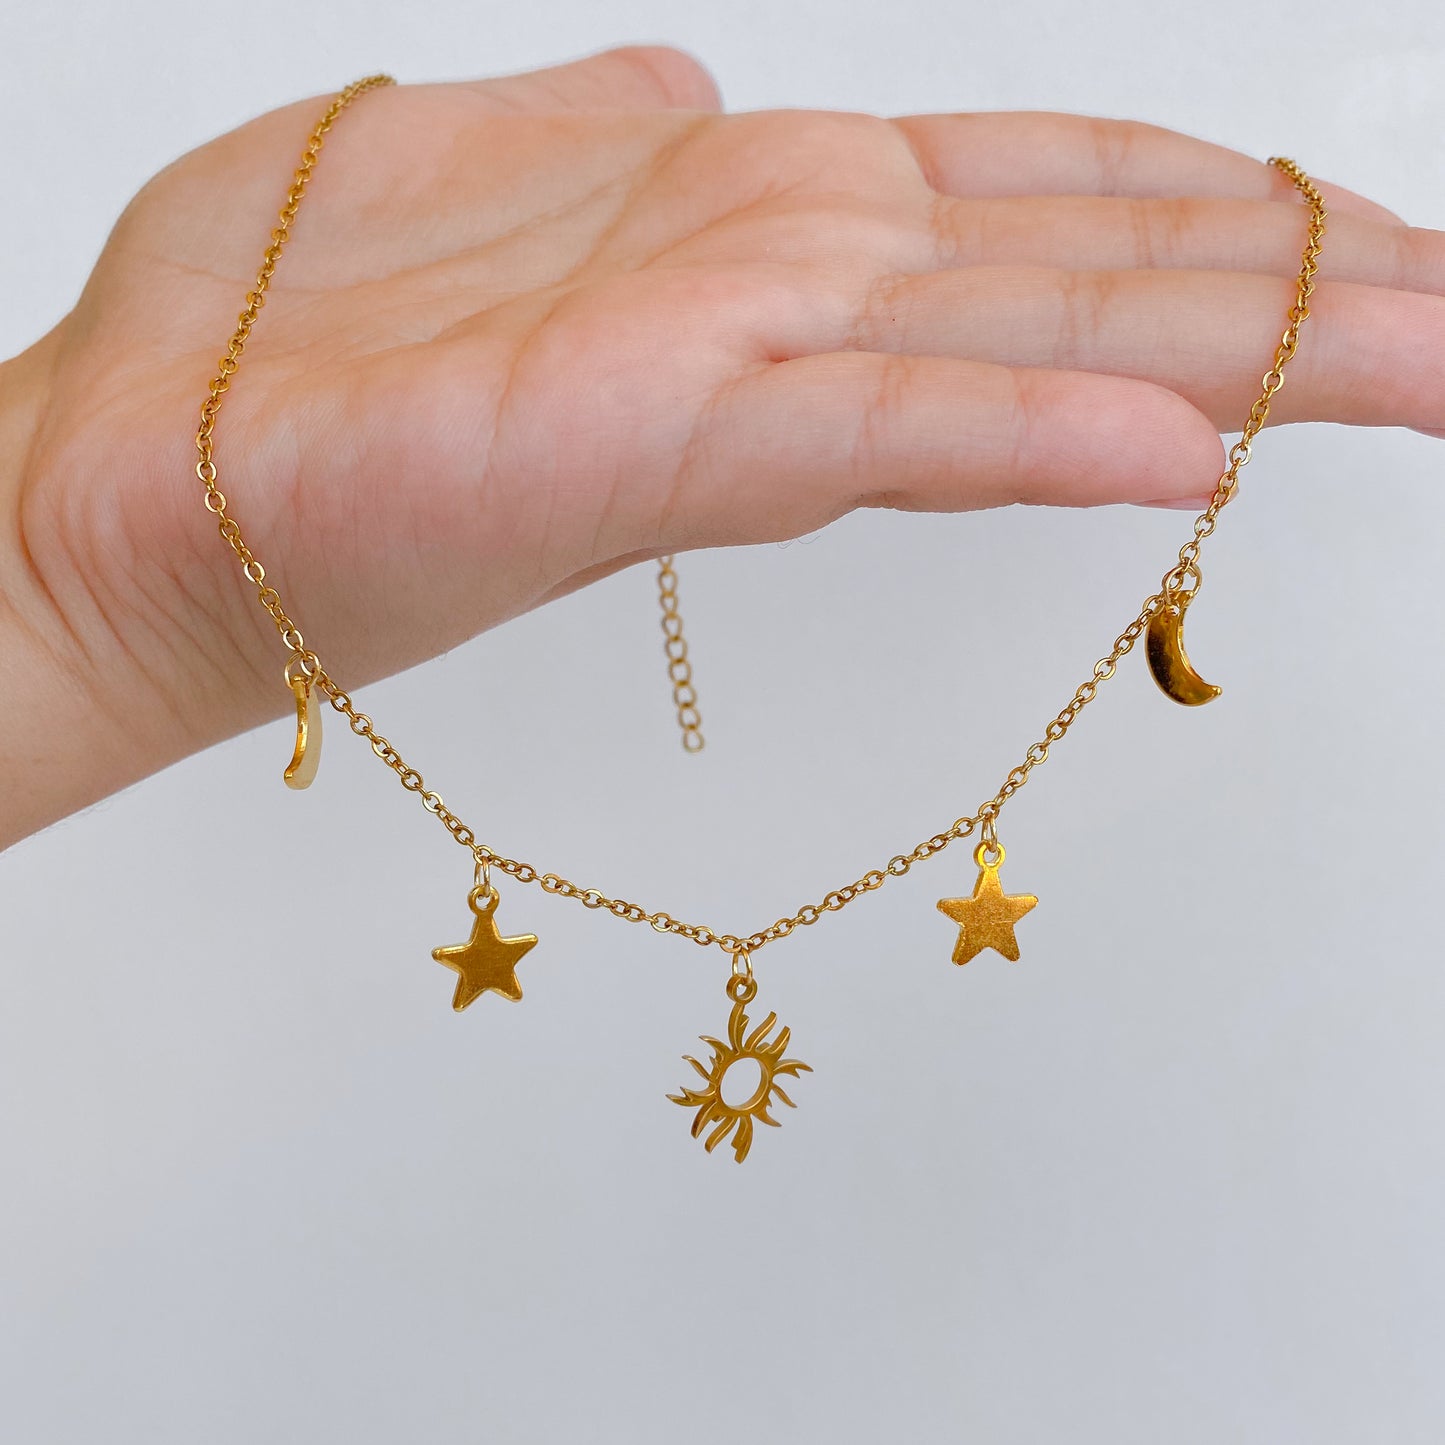 Astro necklace